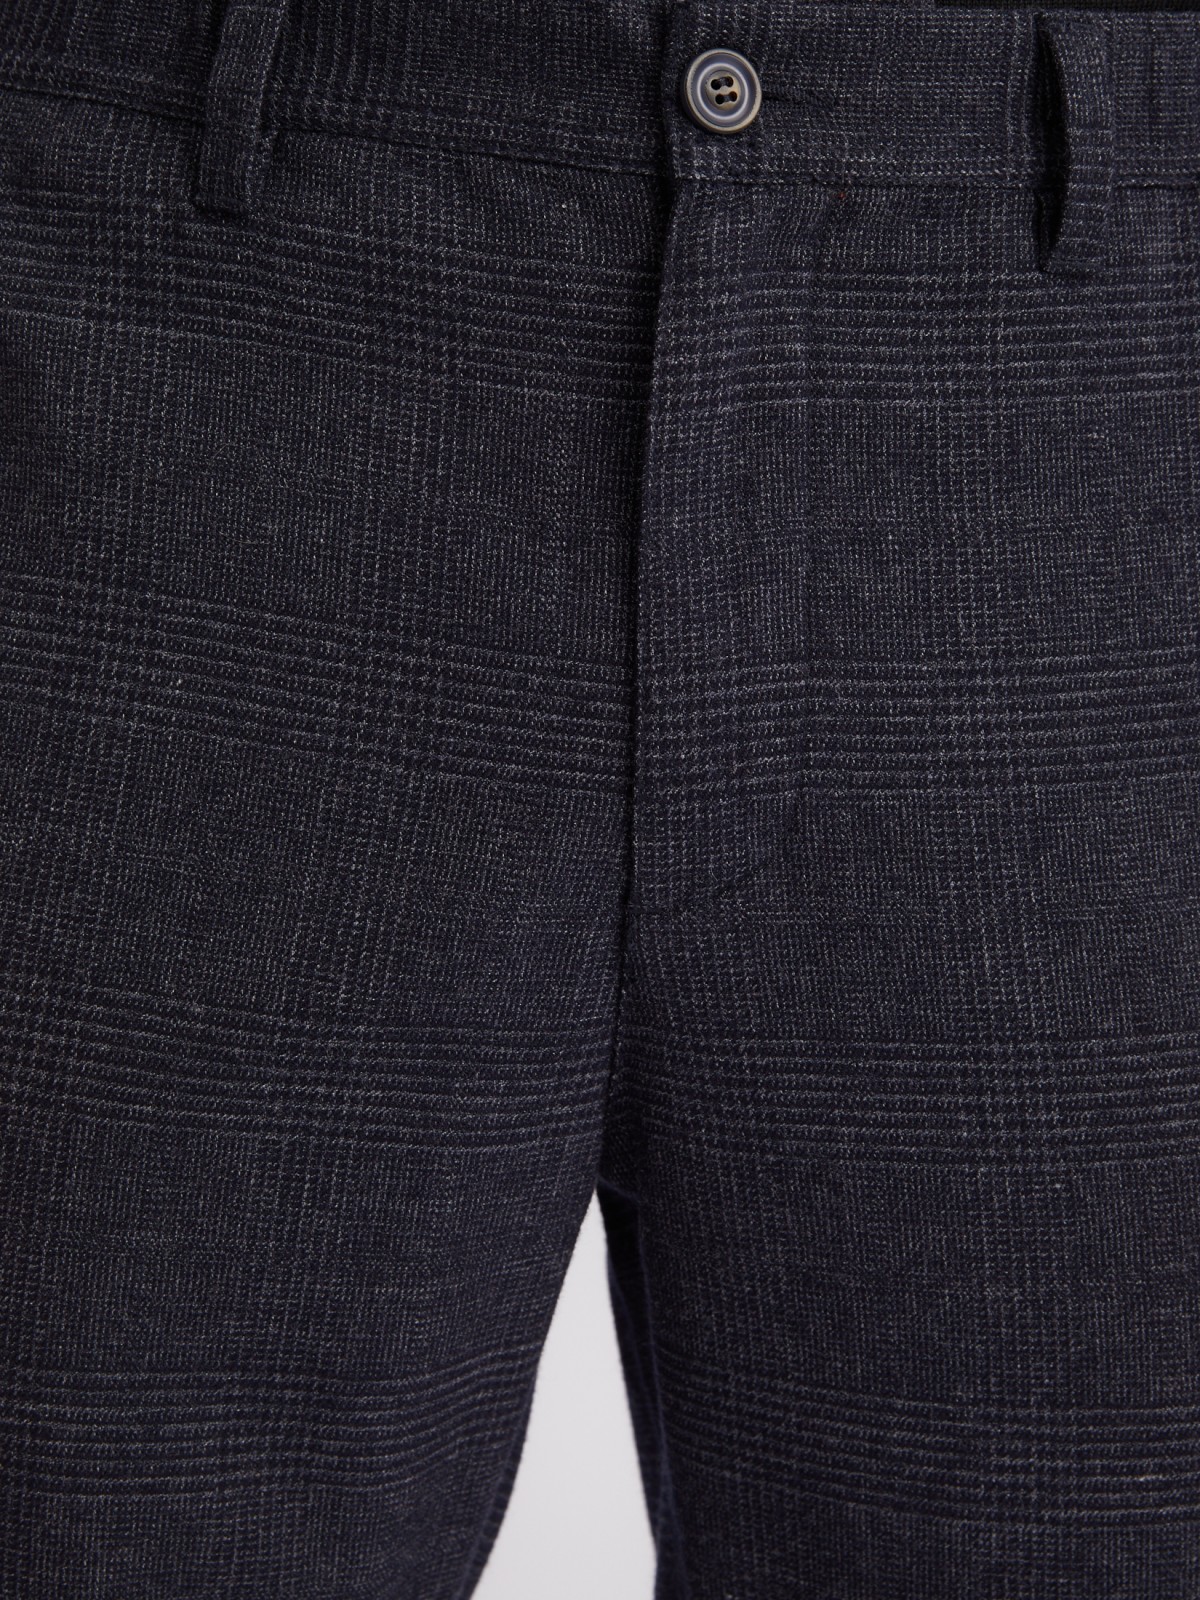 Офисные брюки силуэта Tapered с узором в клетку и поясом на резинке zolla 013347366041, цвет синий, размер 30 - фото 4